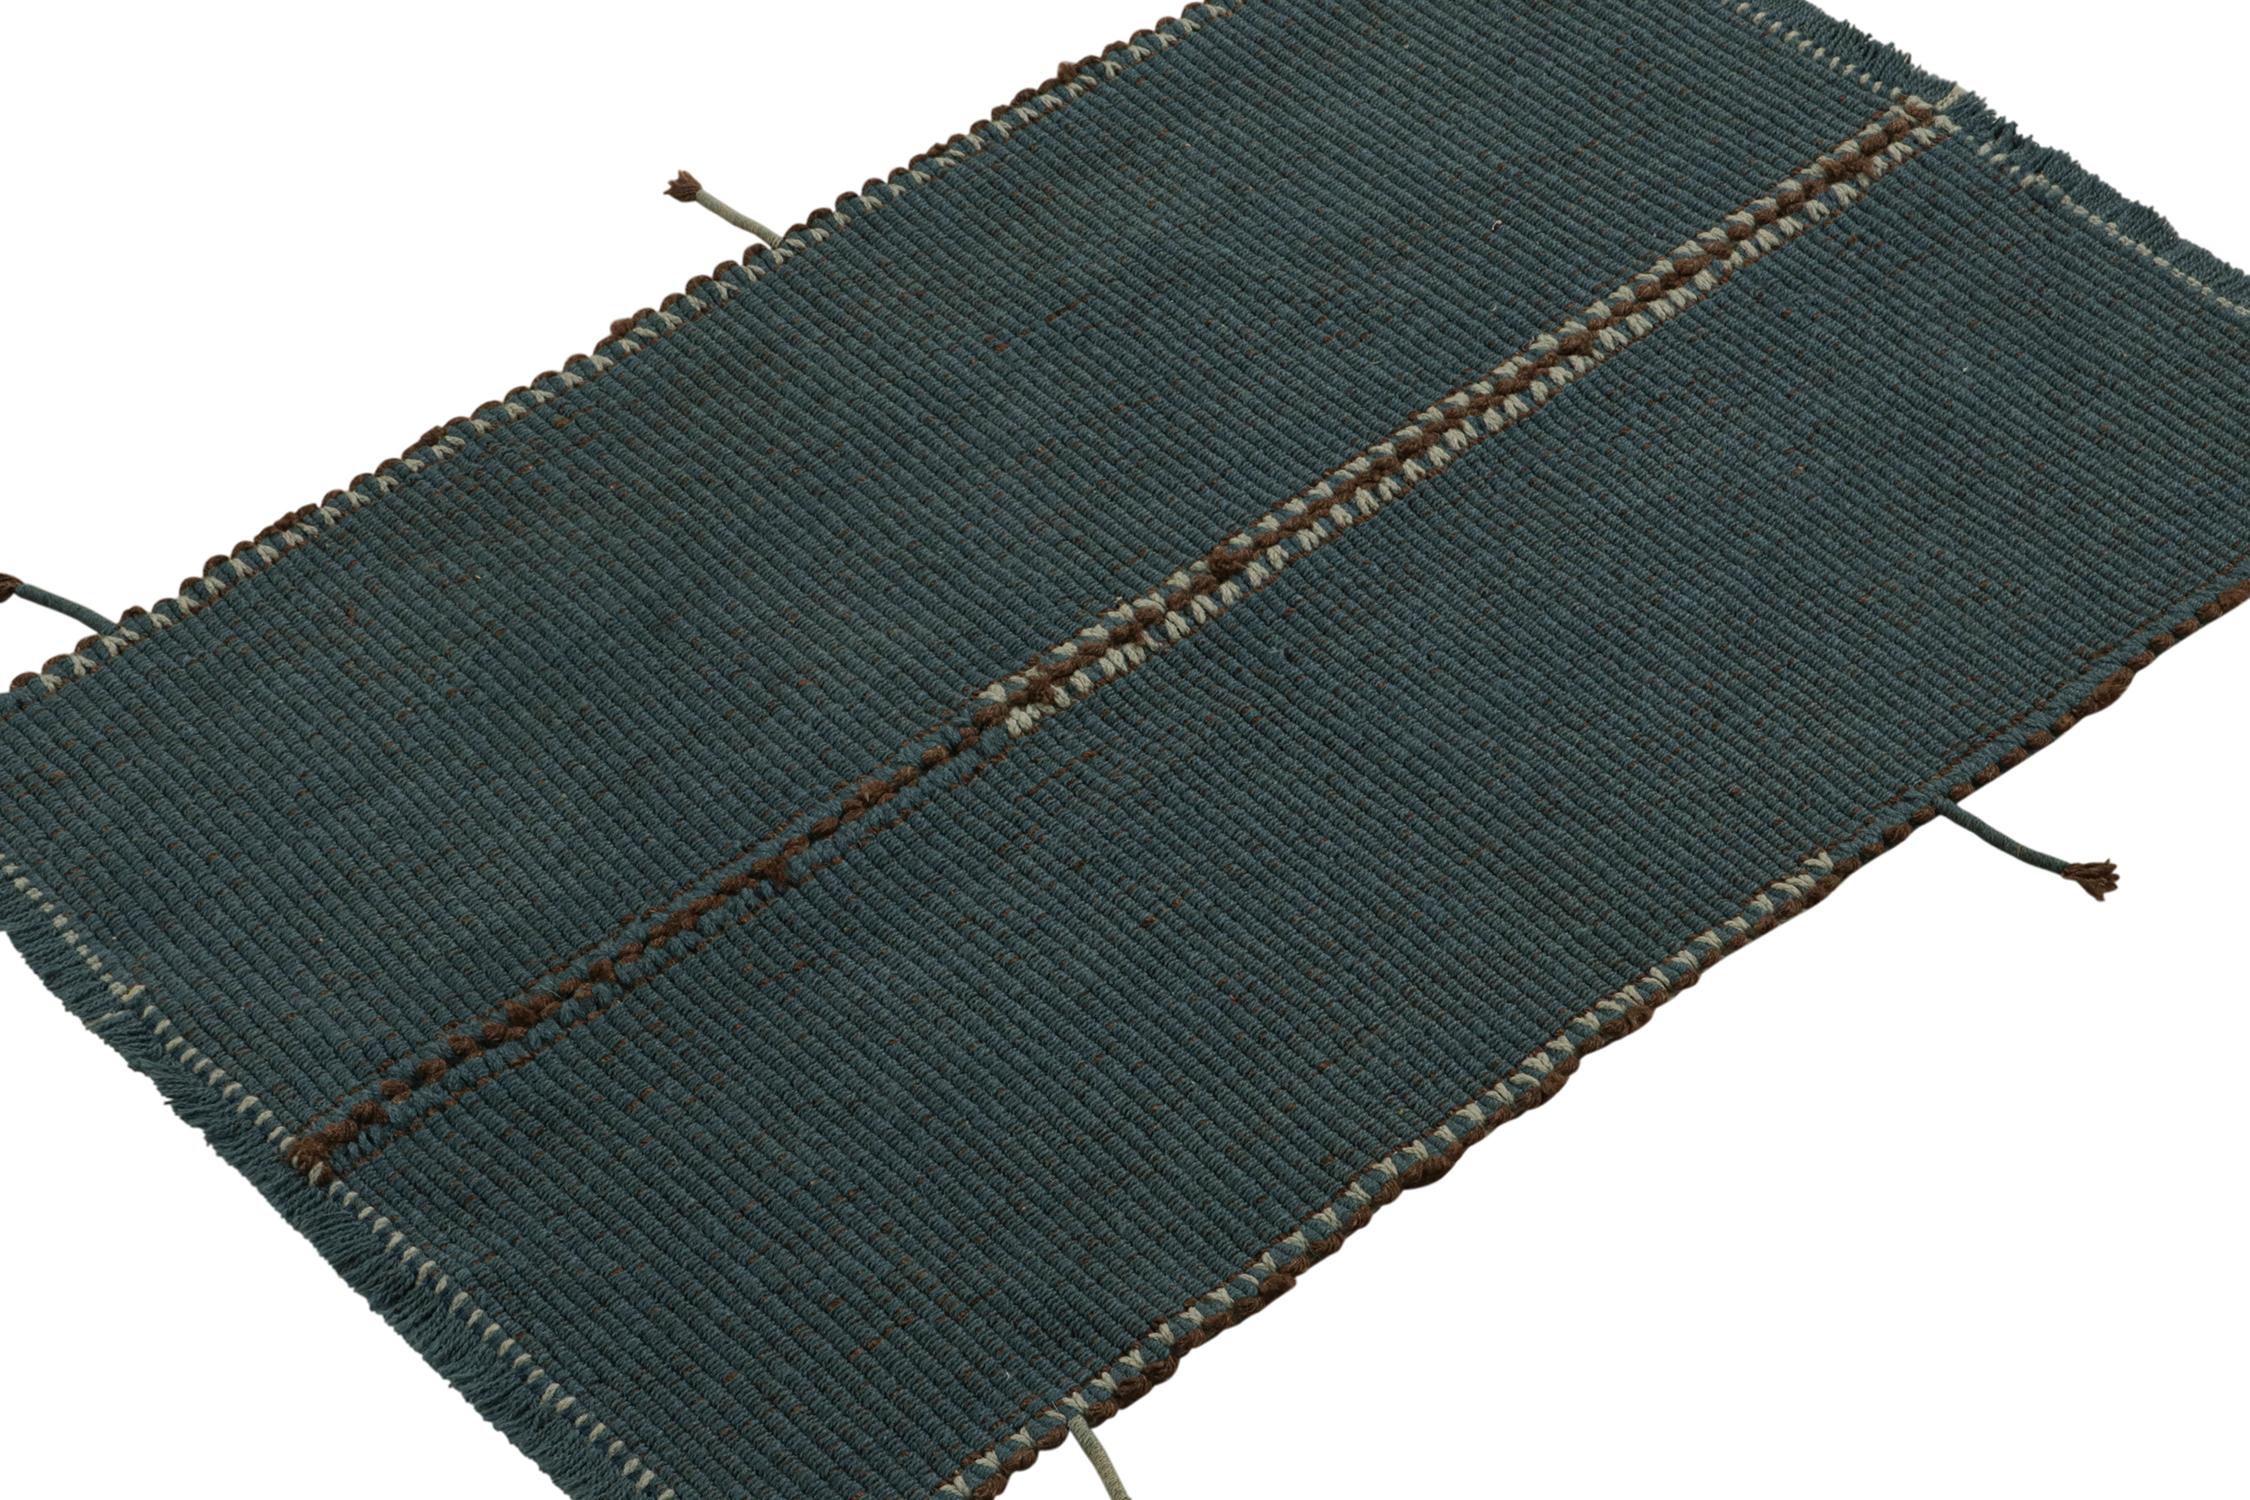 Tissé à la main en laine, un design de Kilim personnalisé d'une nouvelle collection innovante de tissage plat contemporain par Rug & Kilim.

Sur le design : Le 